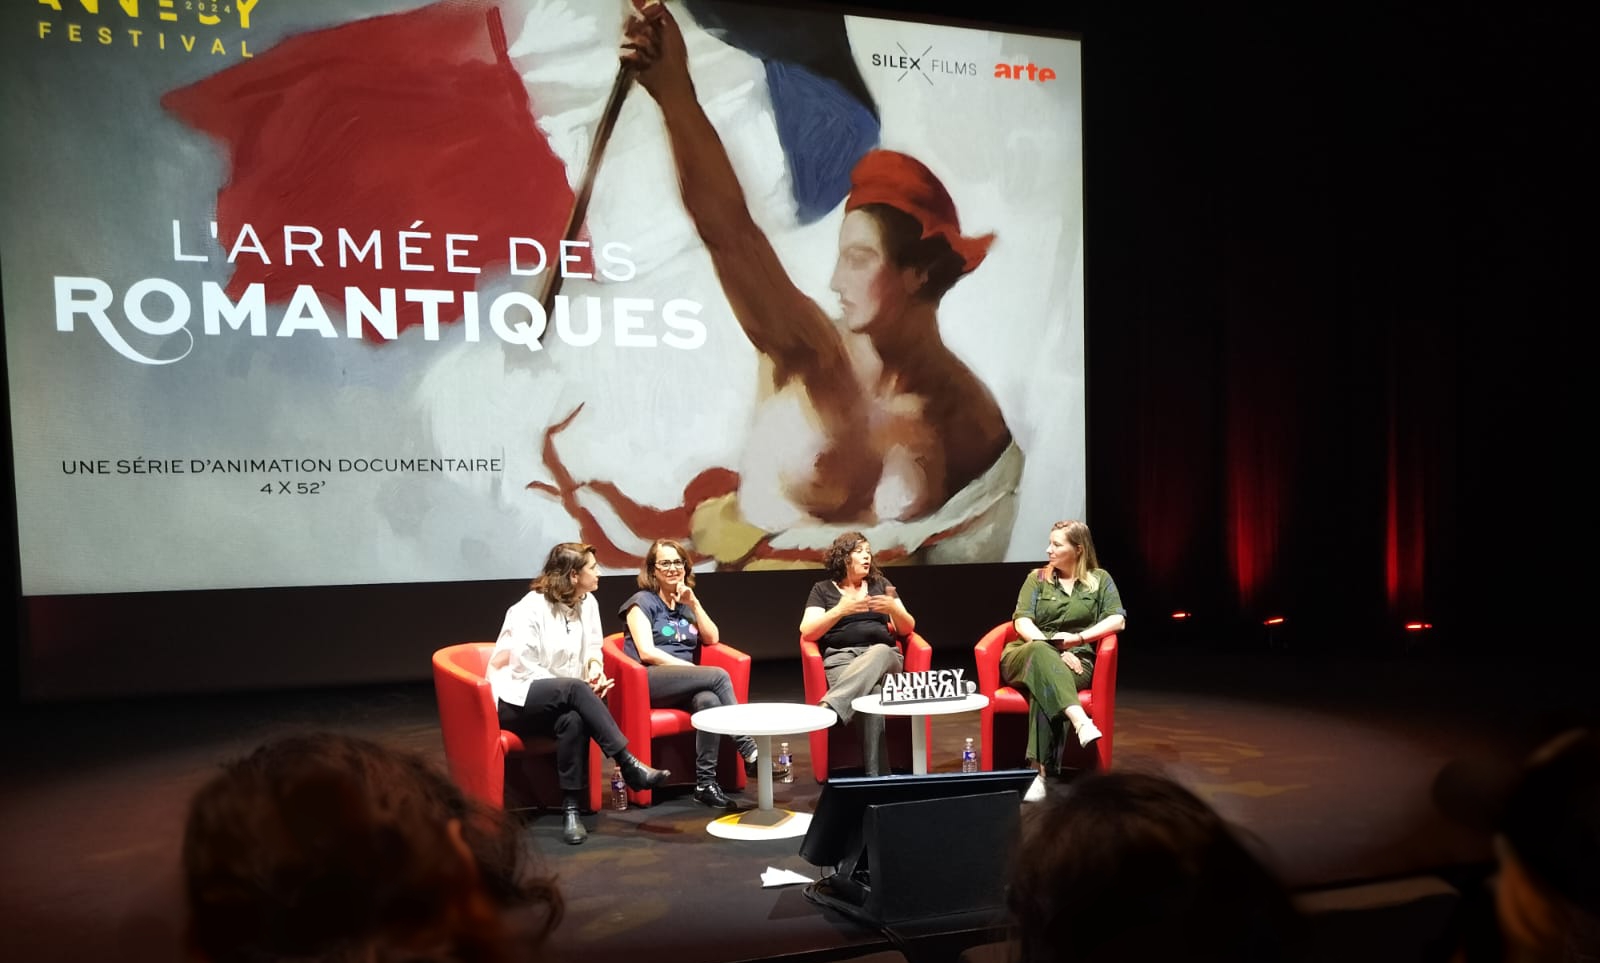 4 femmes sont installées sur scène pour présenter le parcours créatif de L'Armée des romantiques : Amélie HARRAULT (Réalisatrice), Judith NORA (Productrice), Céline RONTÉ (Scénariste), Perrine QUENNESSON (Modératrice)